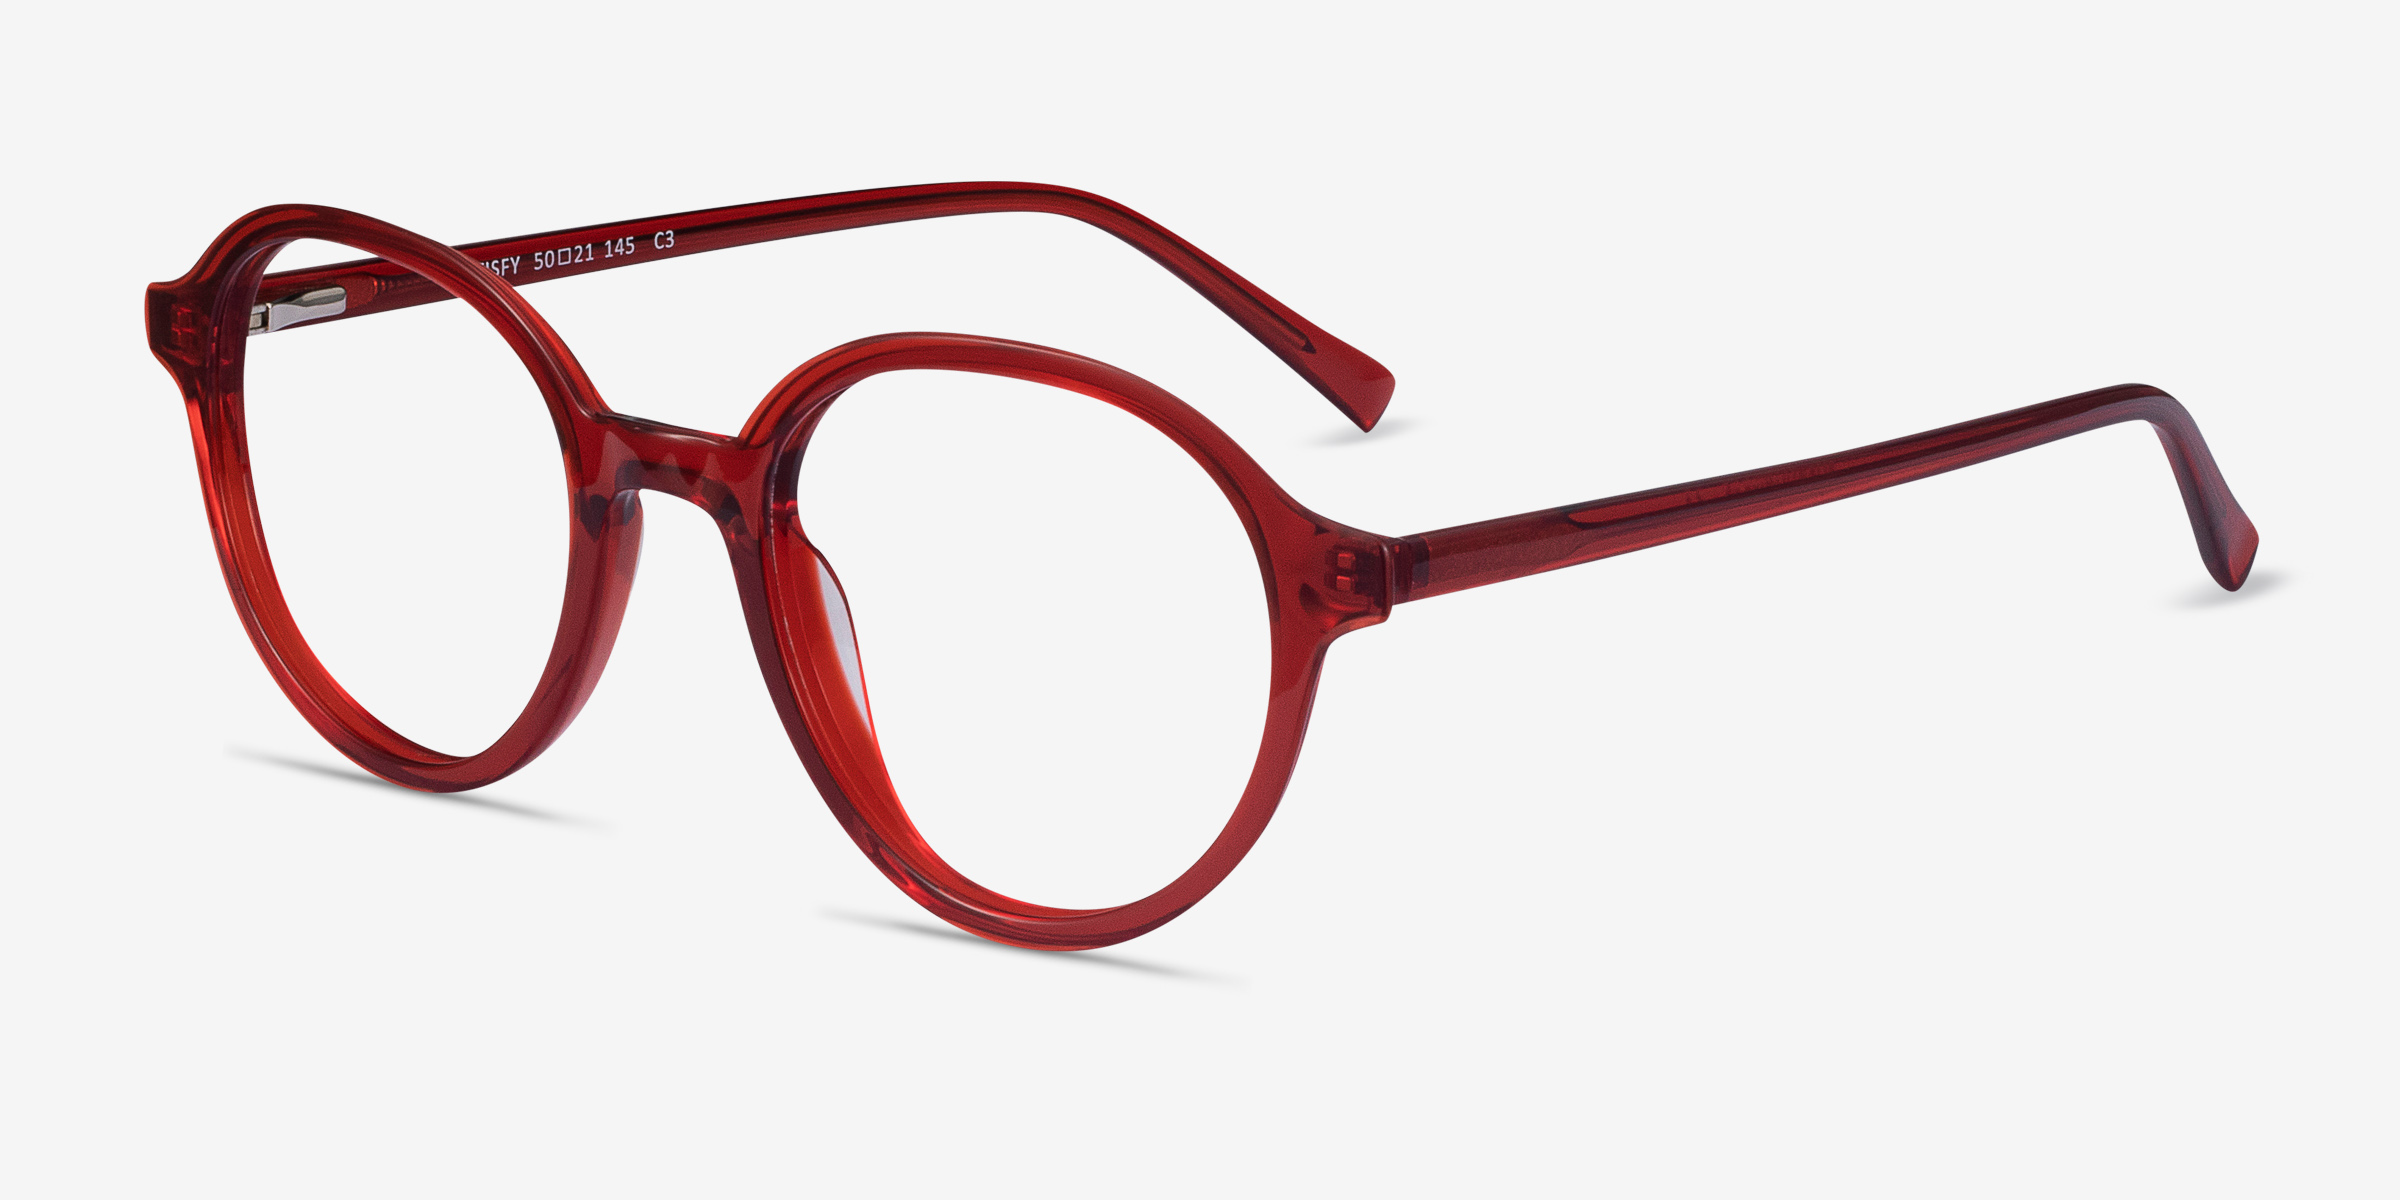 Satisfy Round Clear Red Full Rim Eyeglasses | Eyebuydirect